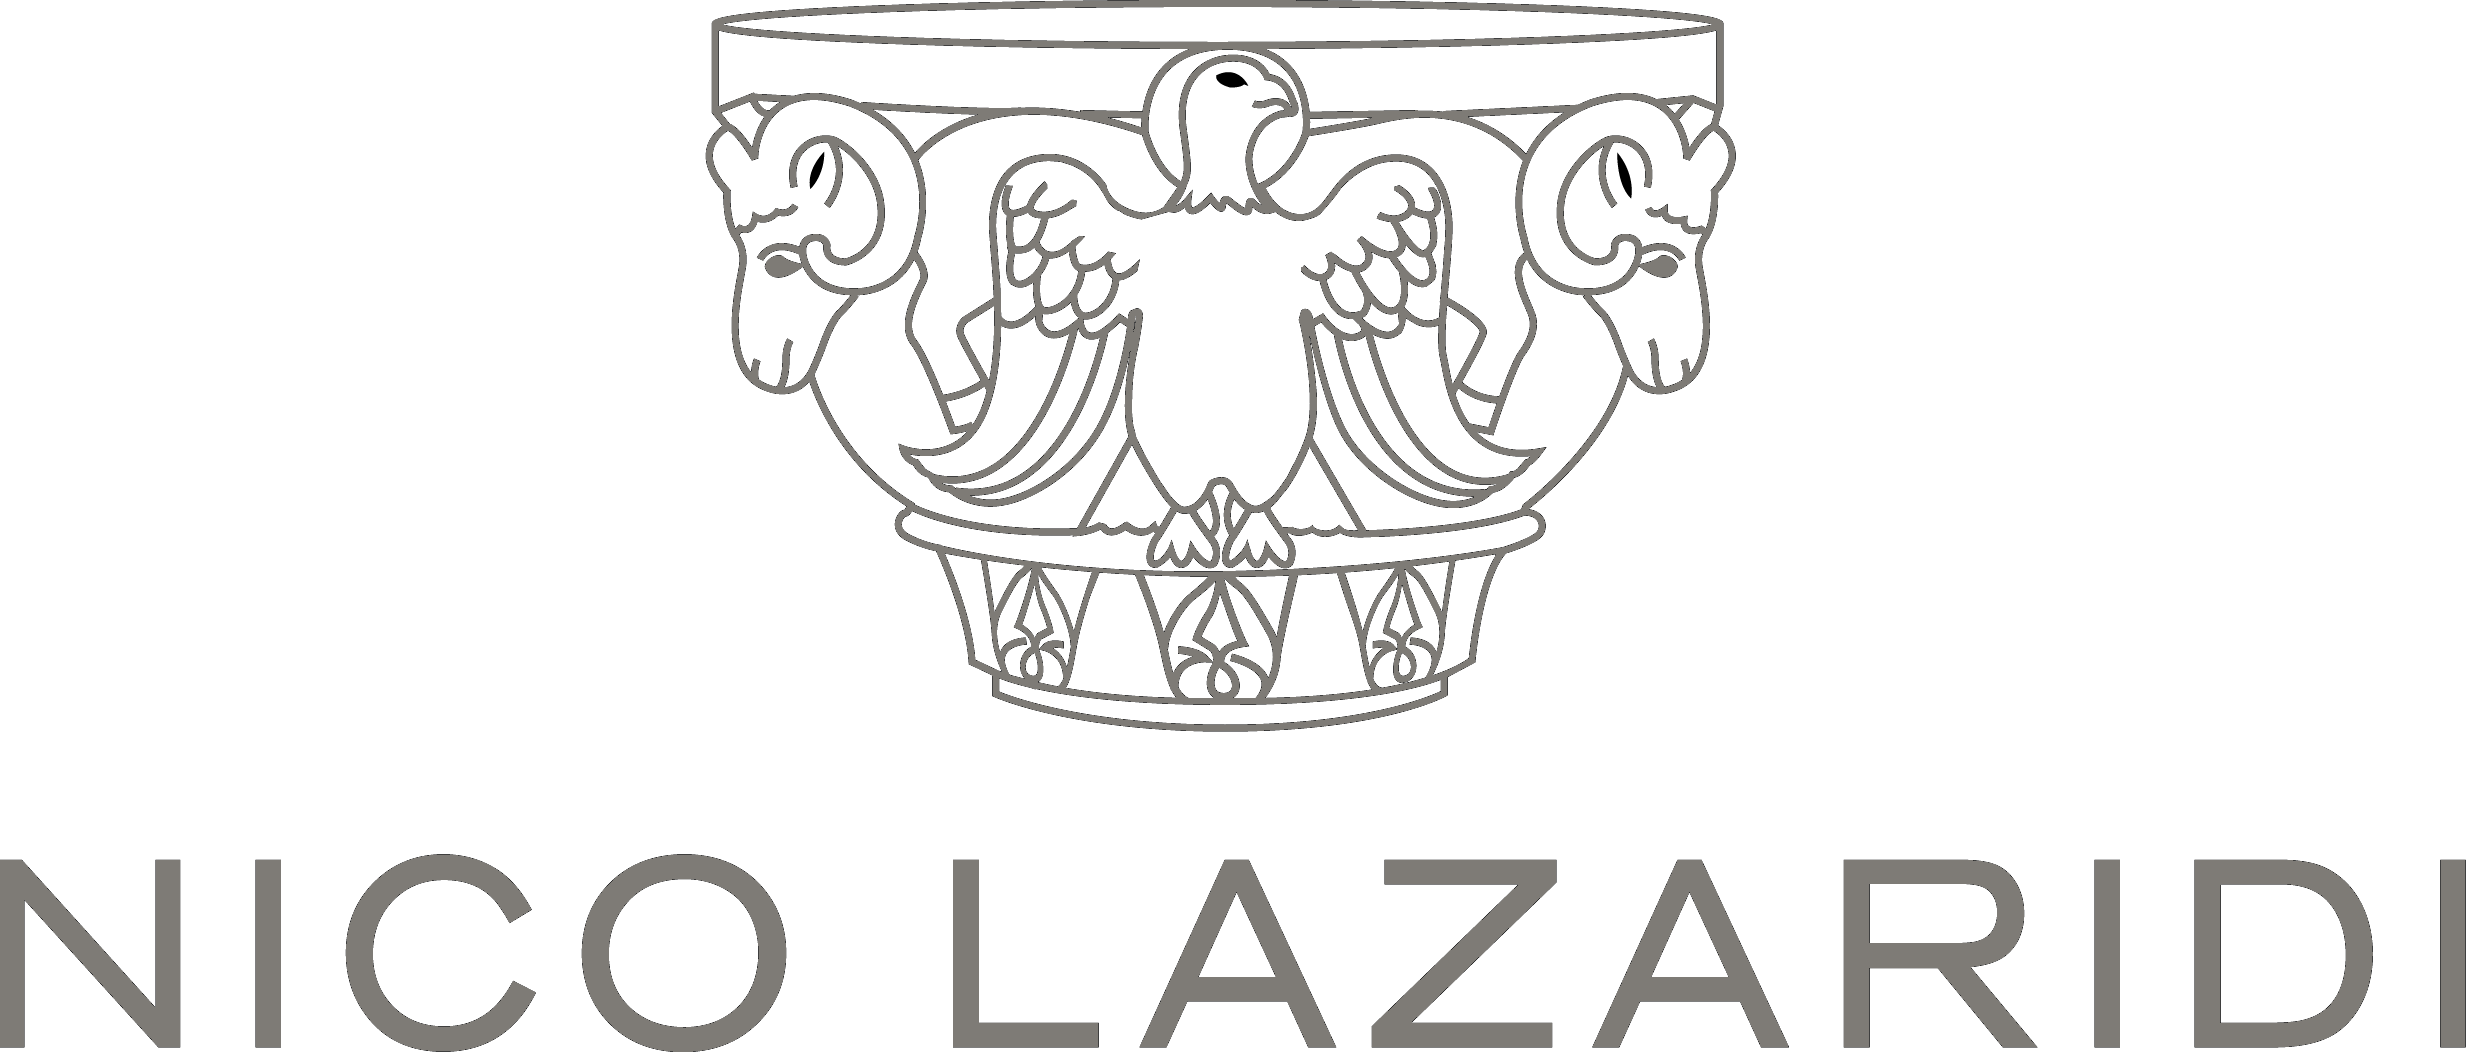 Nico Lazaridi